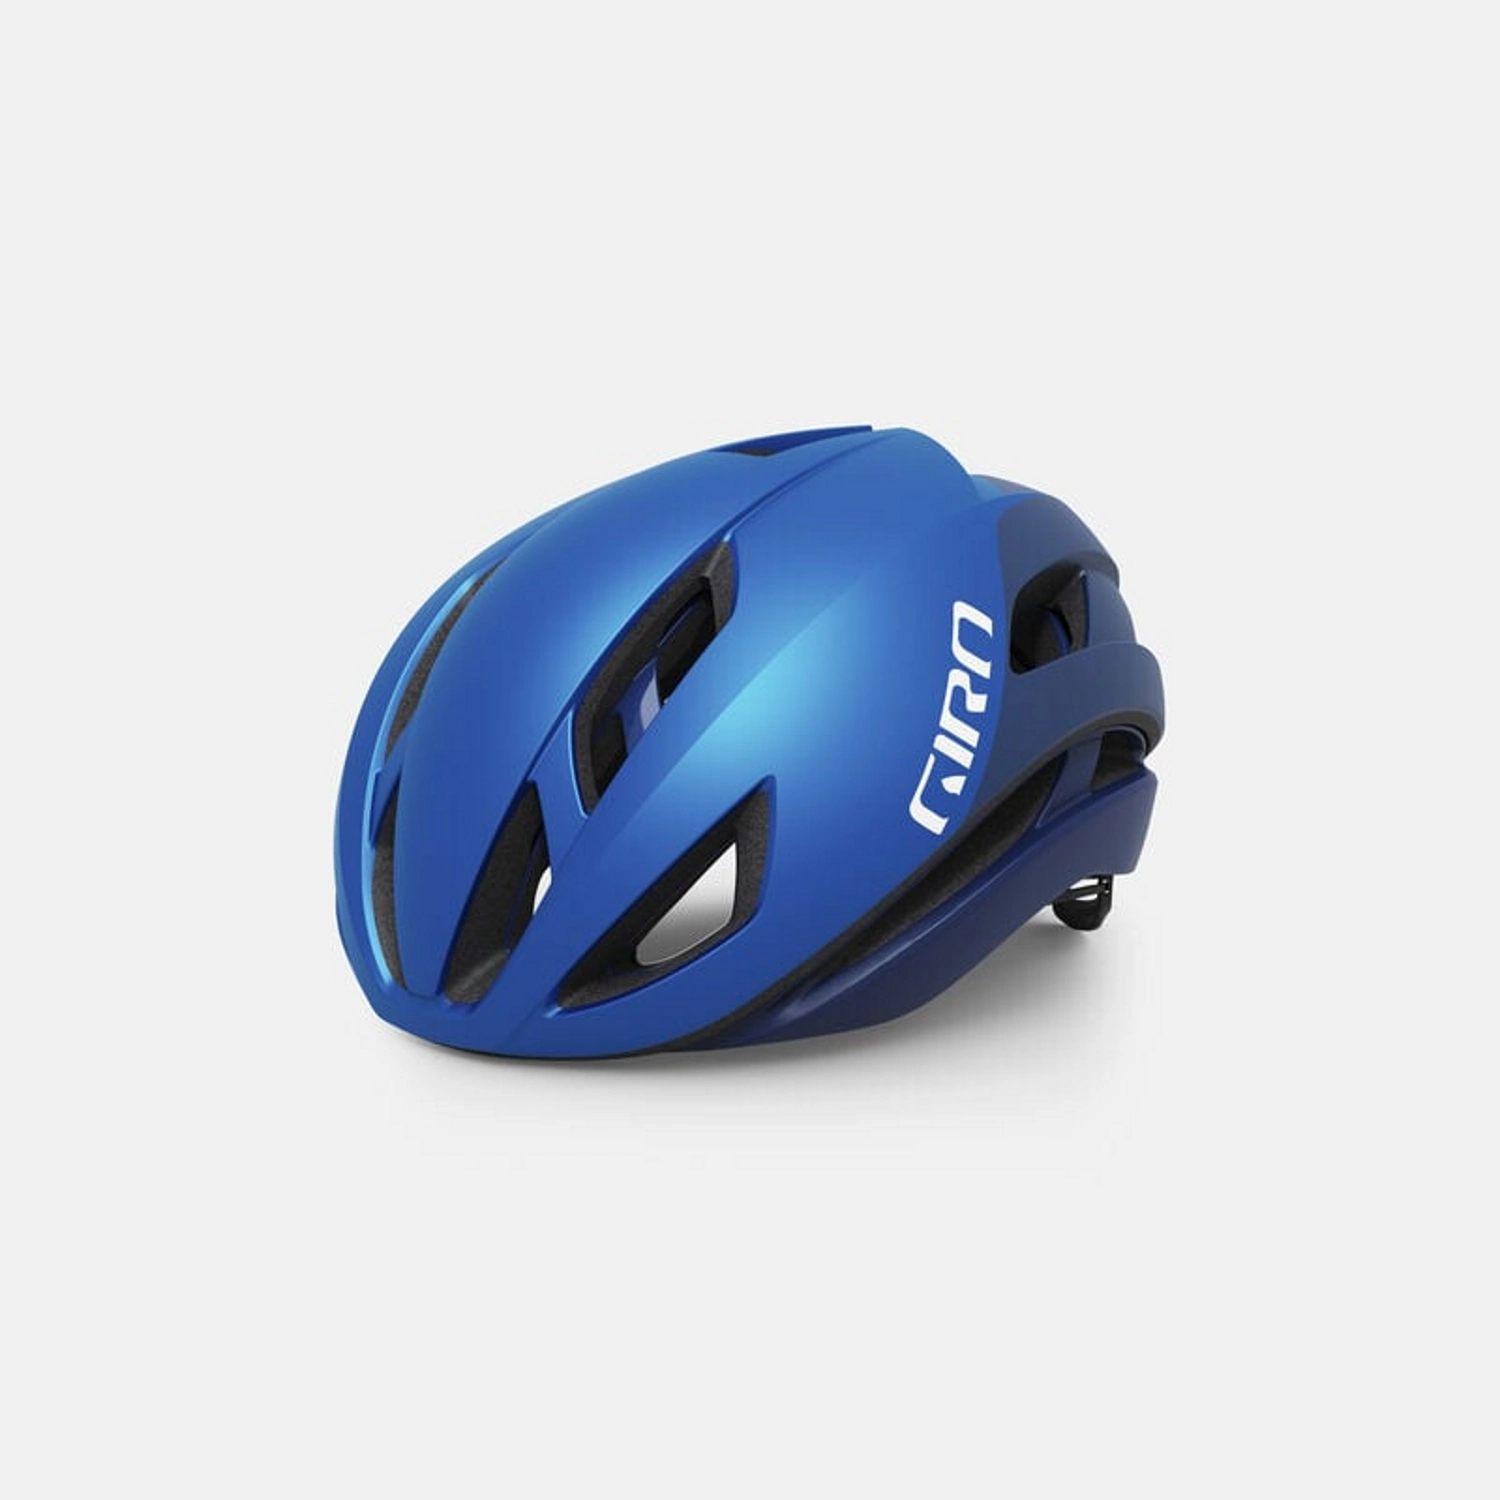 Niebieski kask szosowy marki Giro, stylowy i z nowoczesnym designem